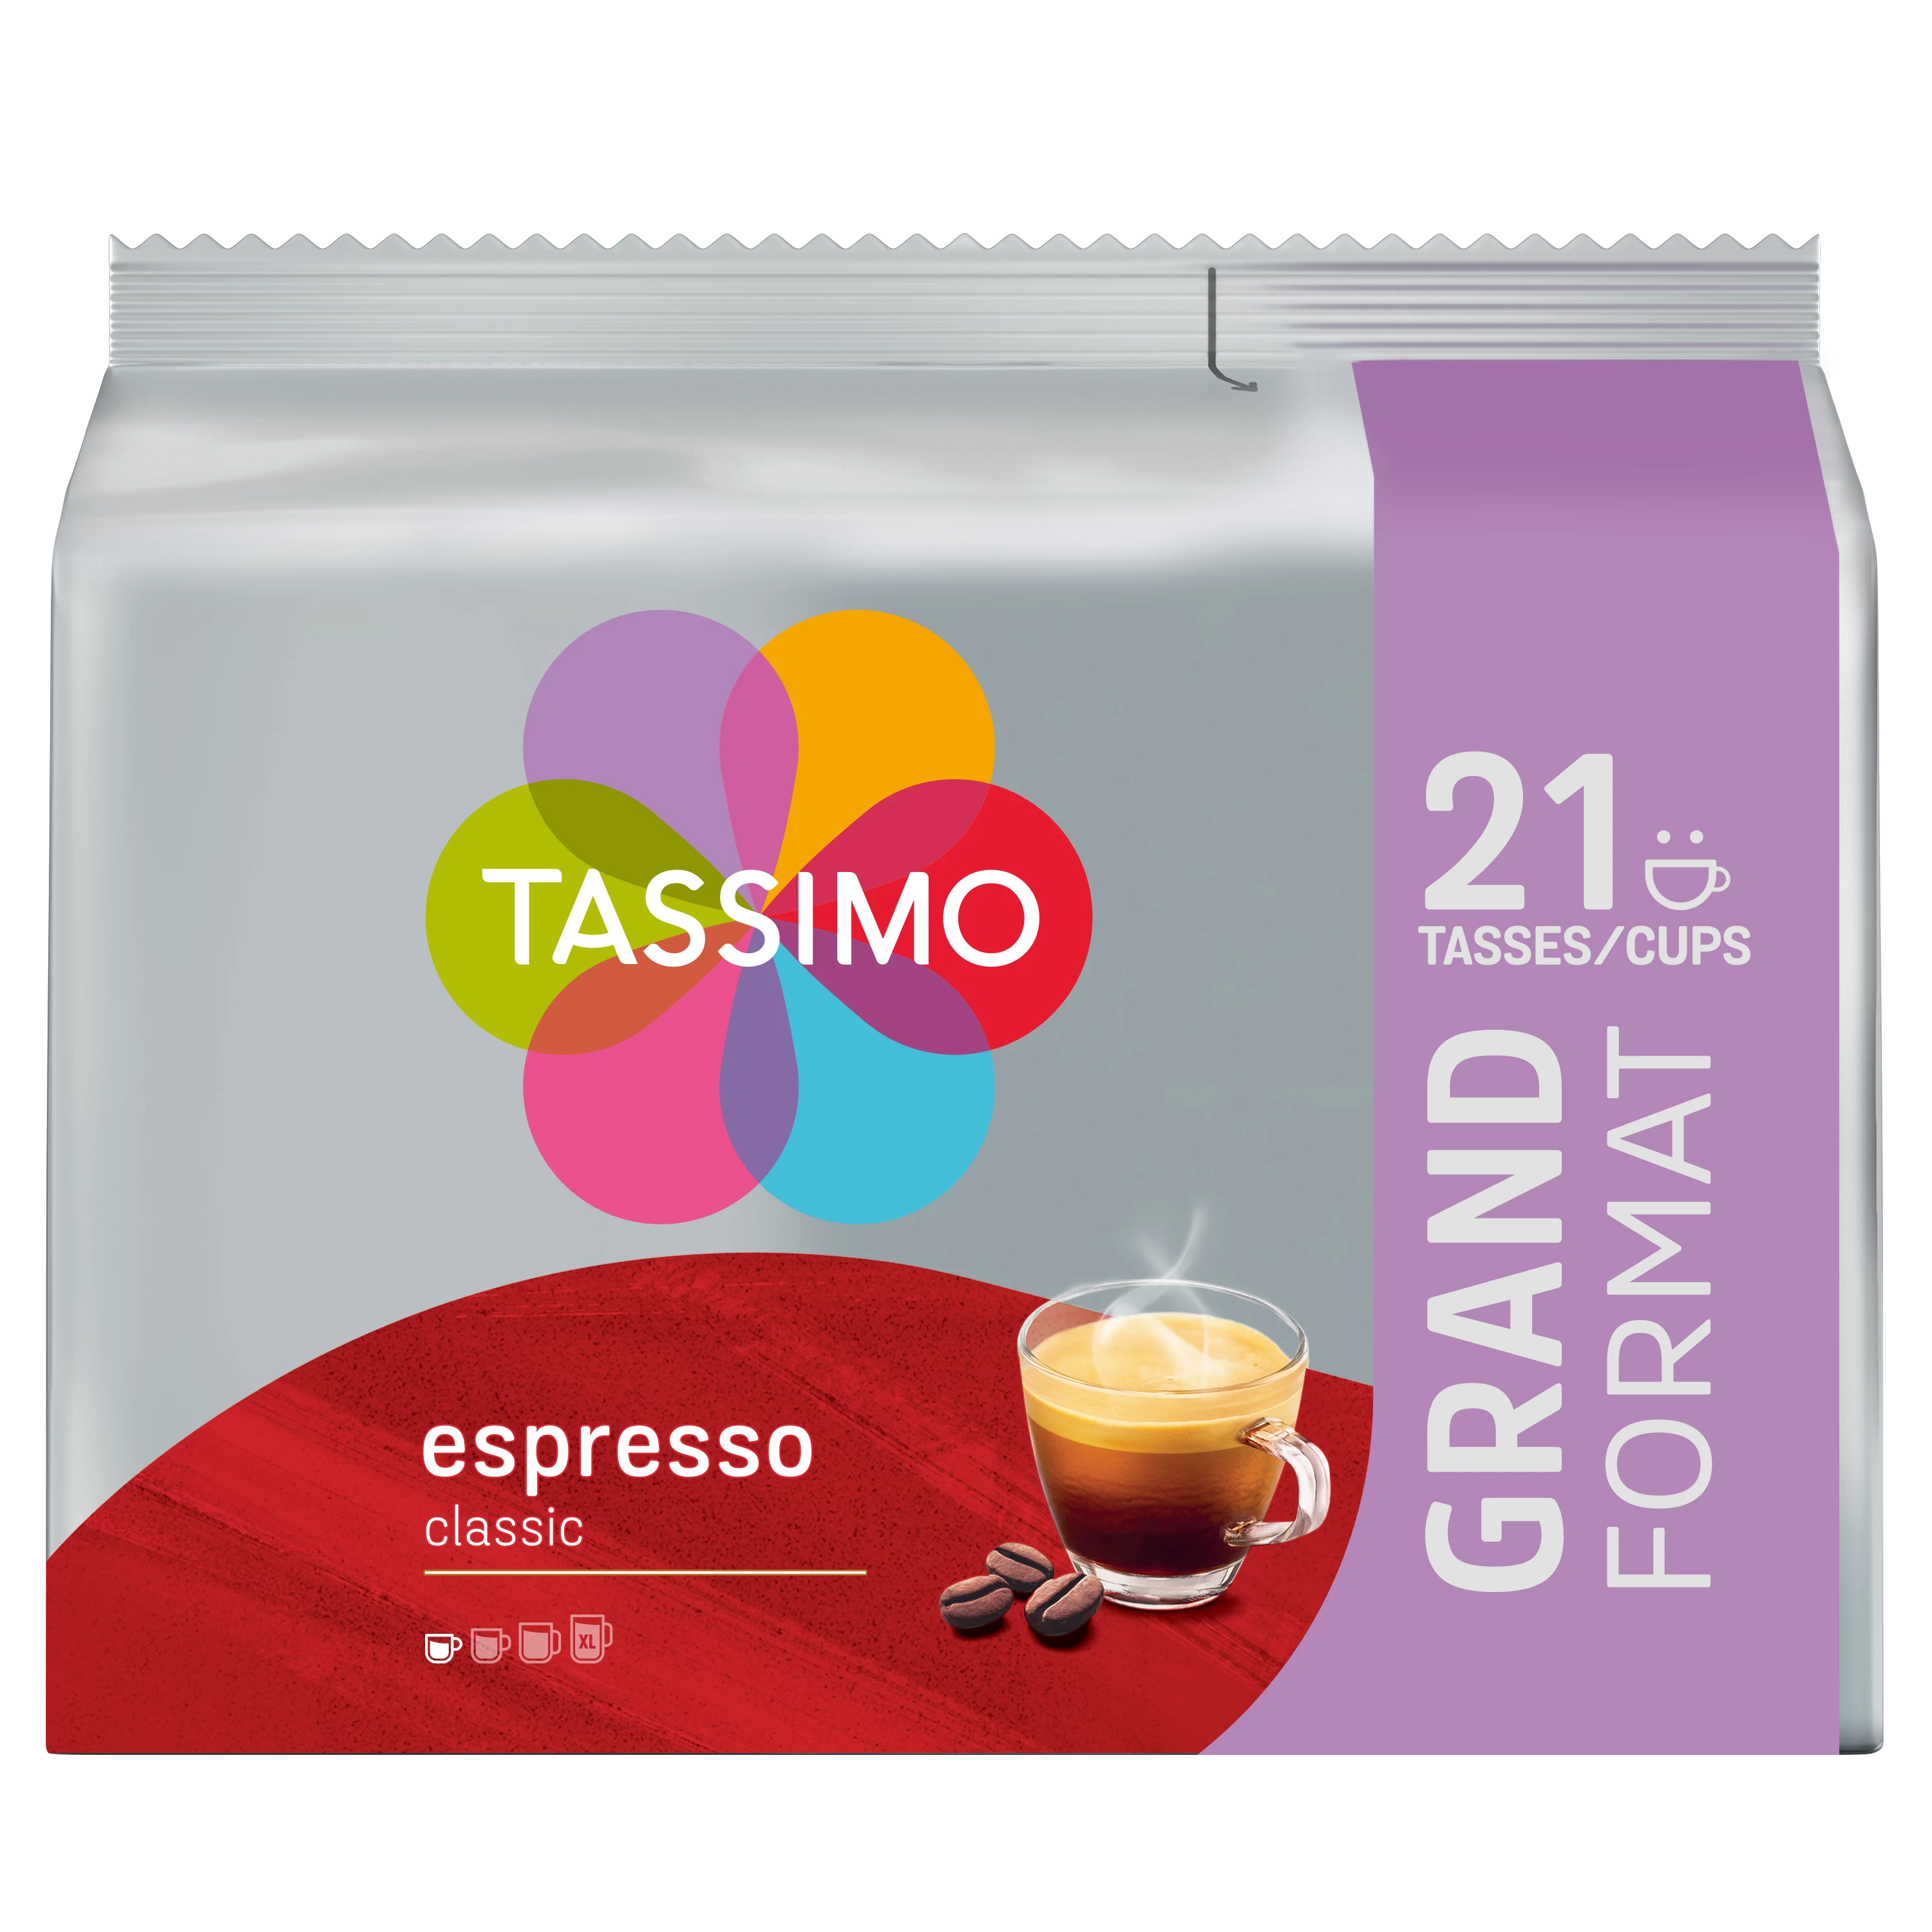 Тассимо Классический Эспрессо x21 120г - TASSIMO